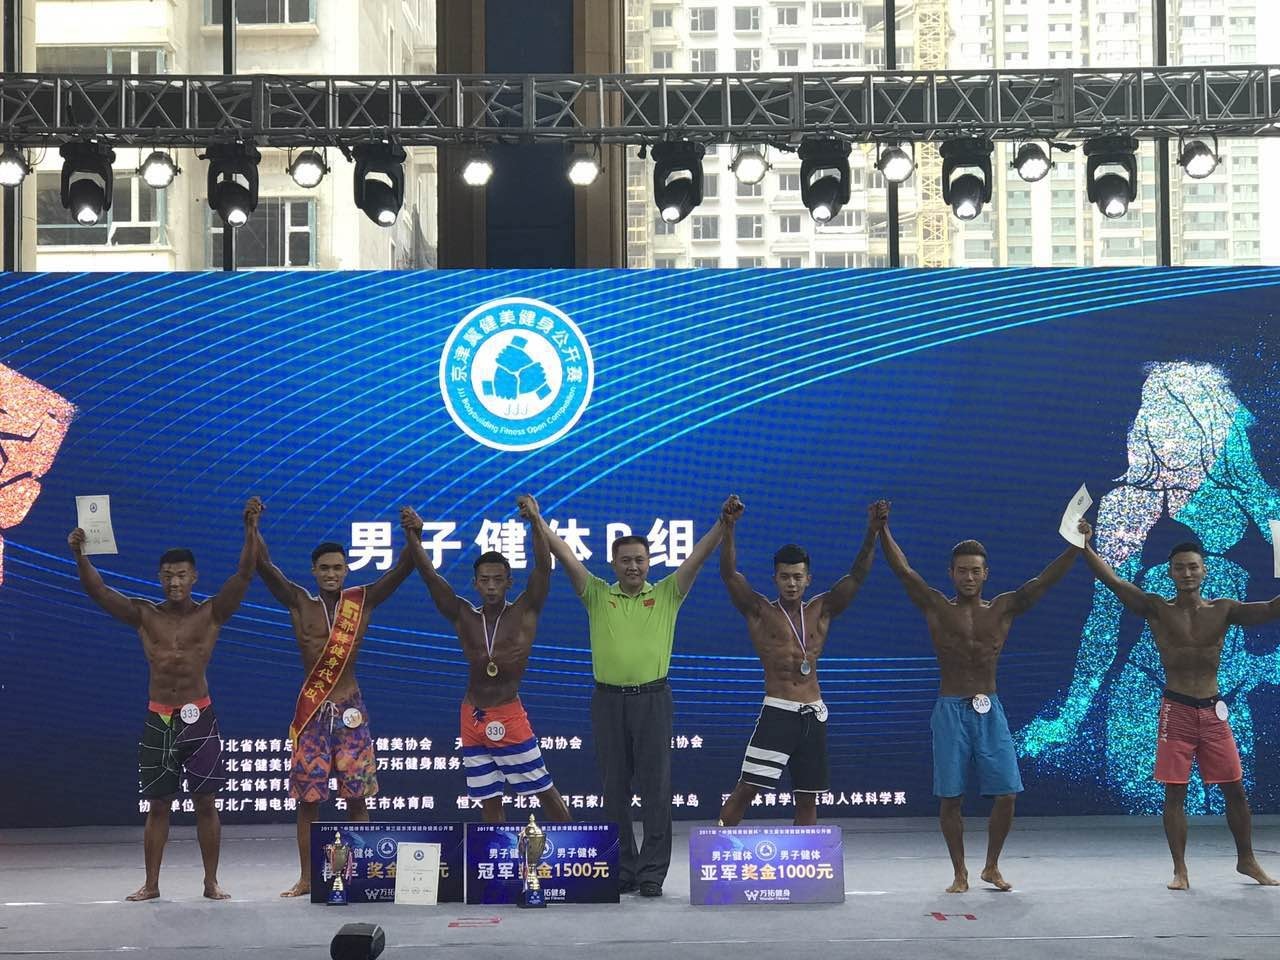 获奖名单丨第三届京津冀健身健美公开赛完美谢幕,完整名单现在公布!